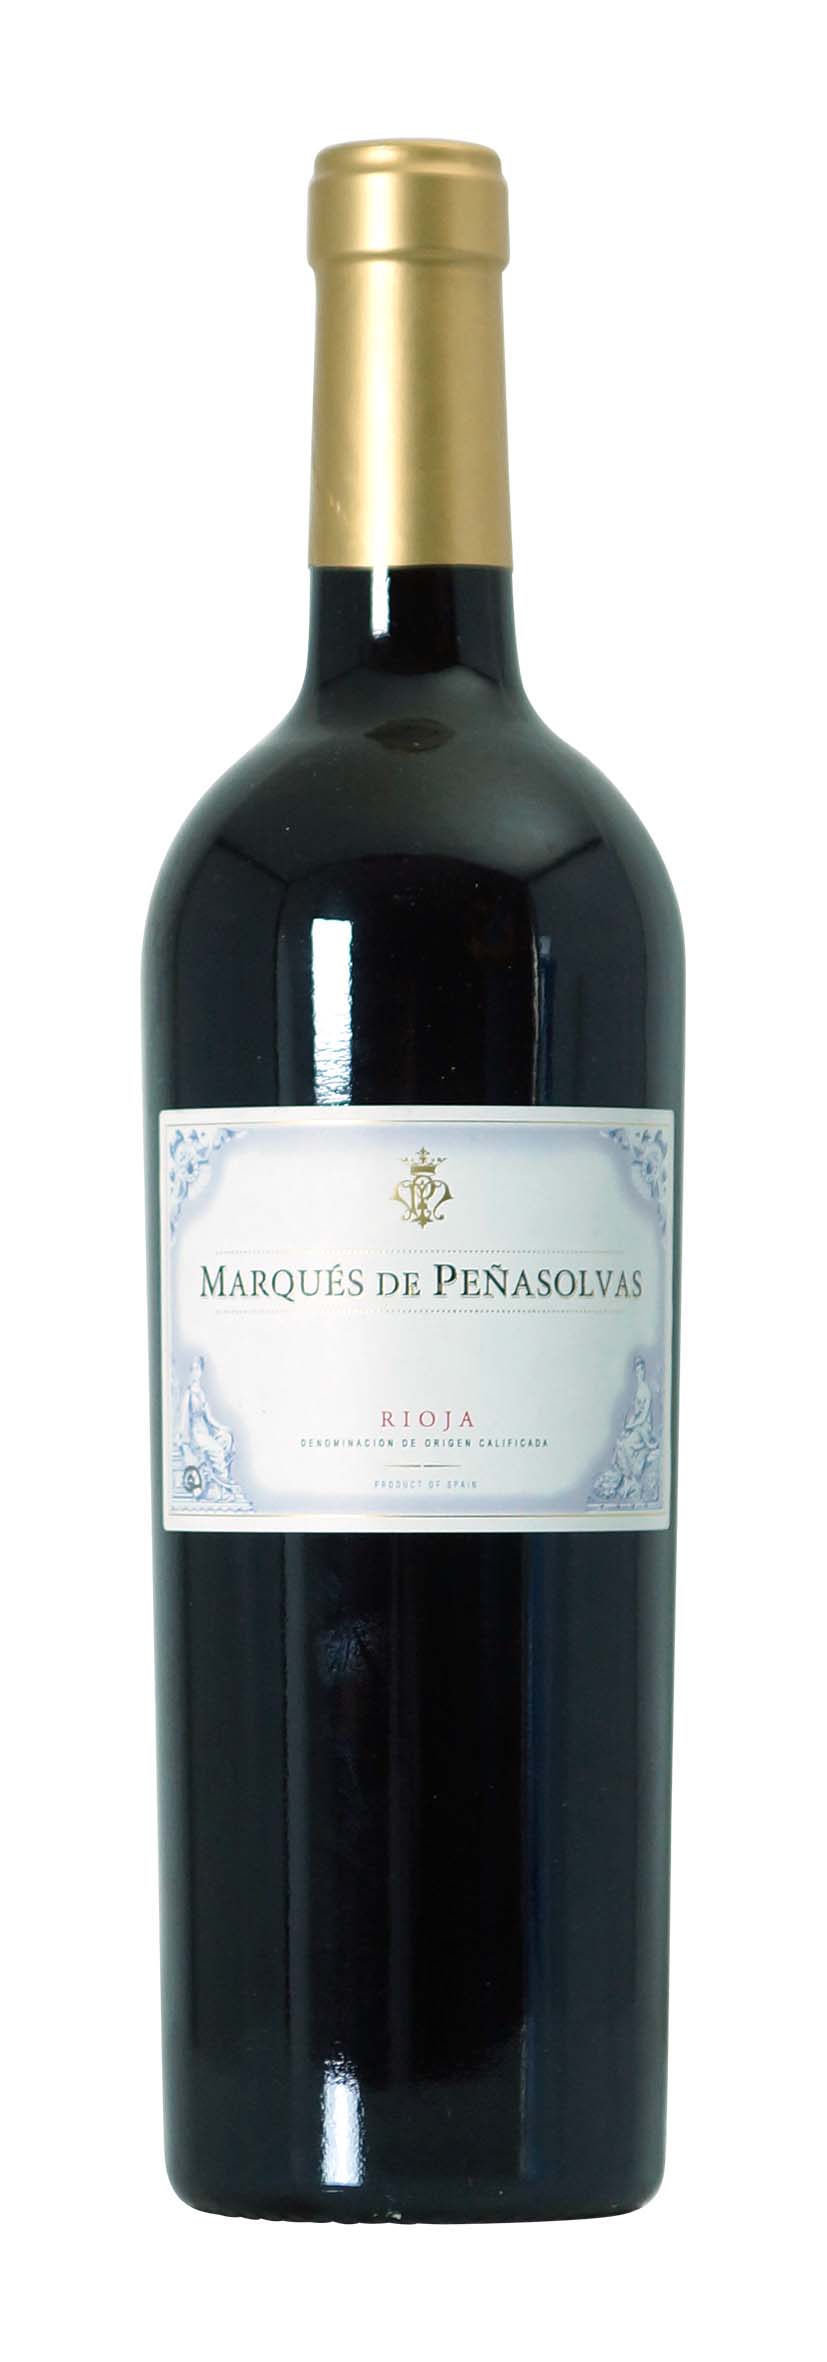 Rioja DOCa Marqués de Peñasolvas 2012